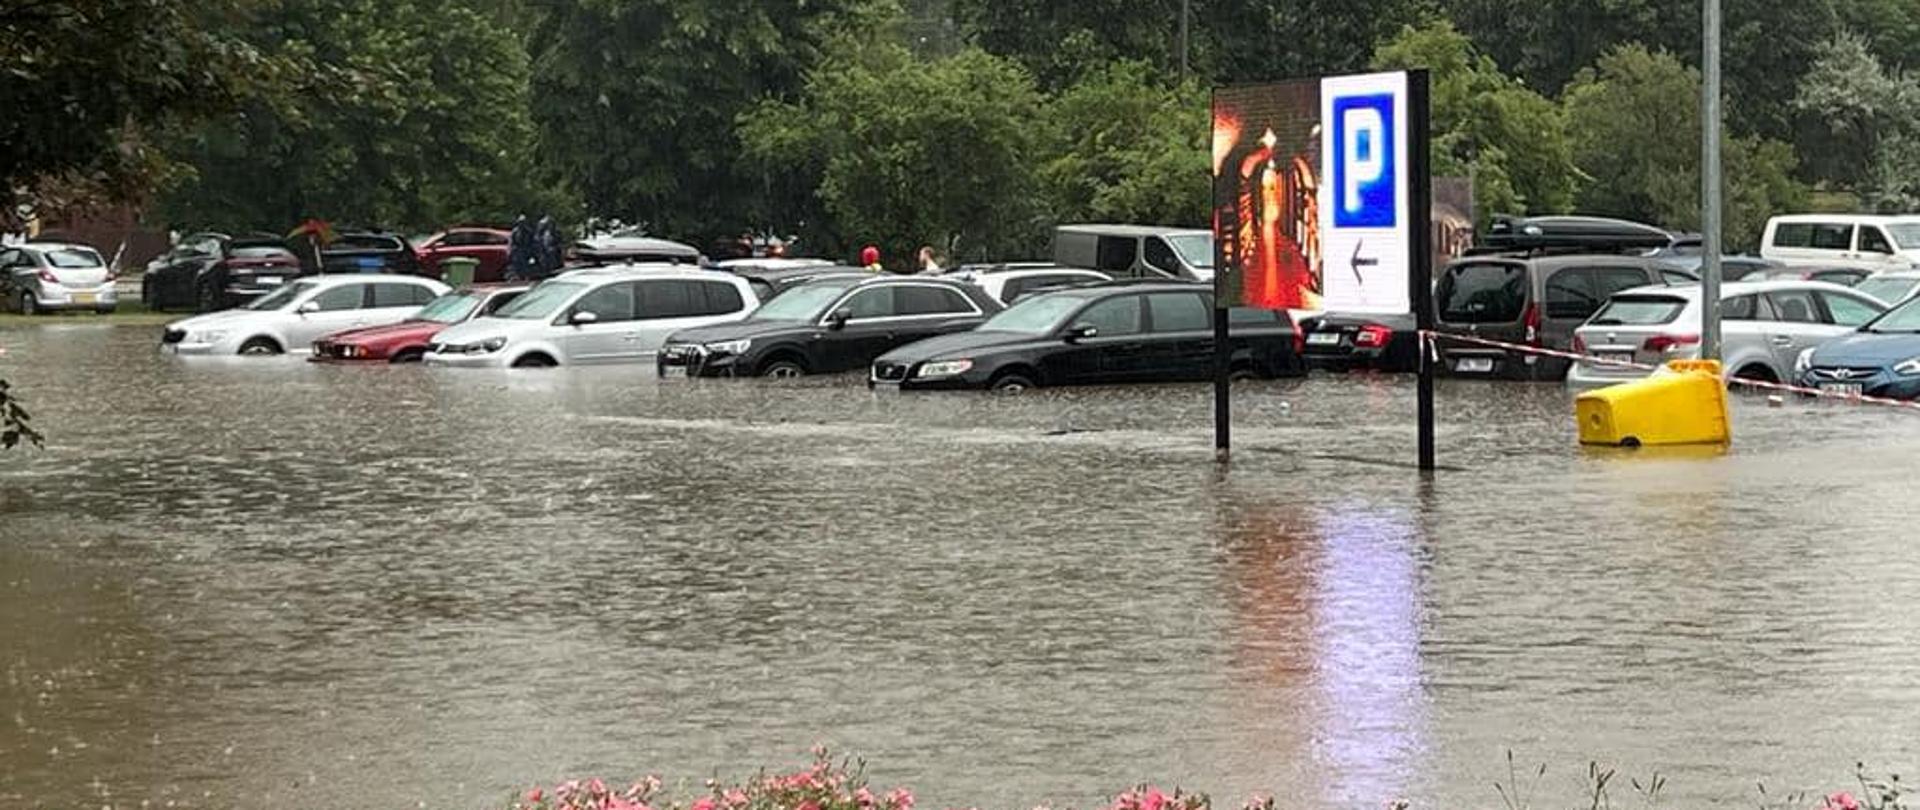 Na zdjęciu widoczne auta na parkingu stojące w wodzie